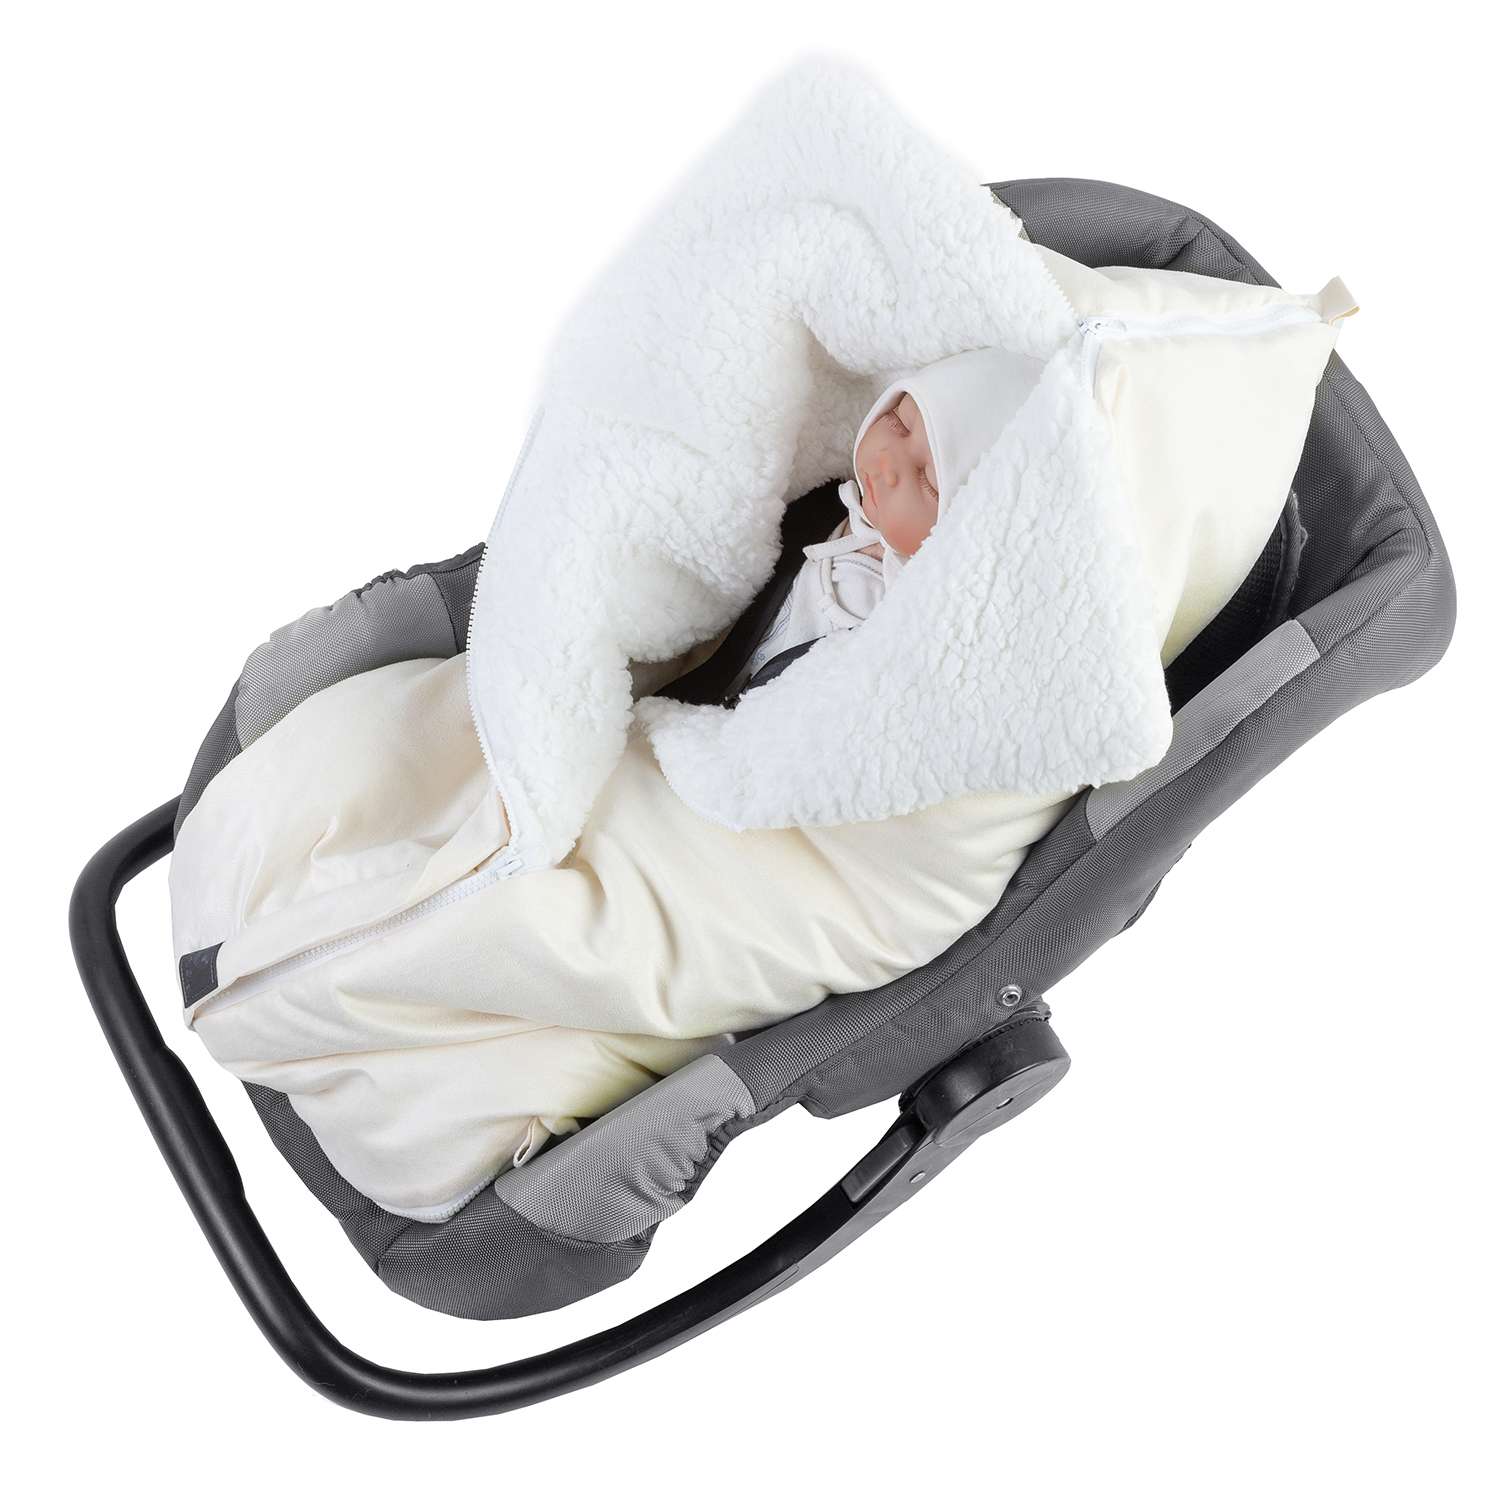 Конверт в коляску inlovery для новорожденного «Нортес» молочный - фото 7